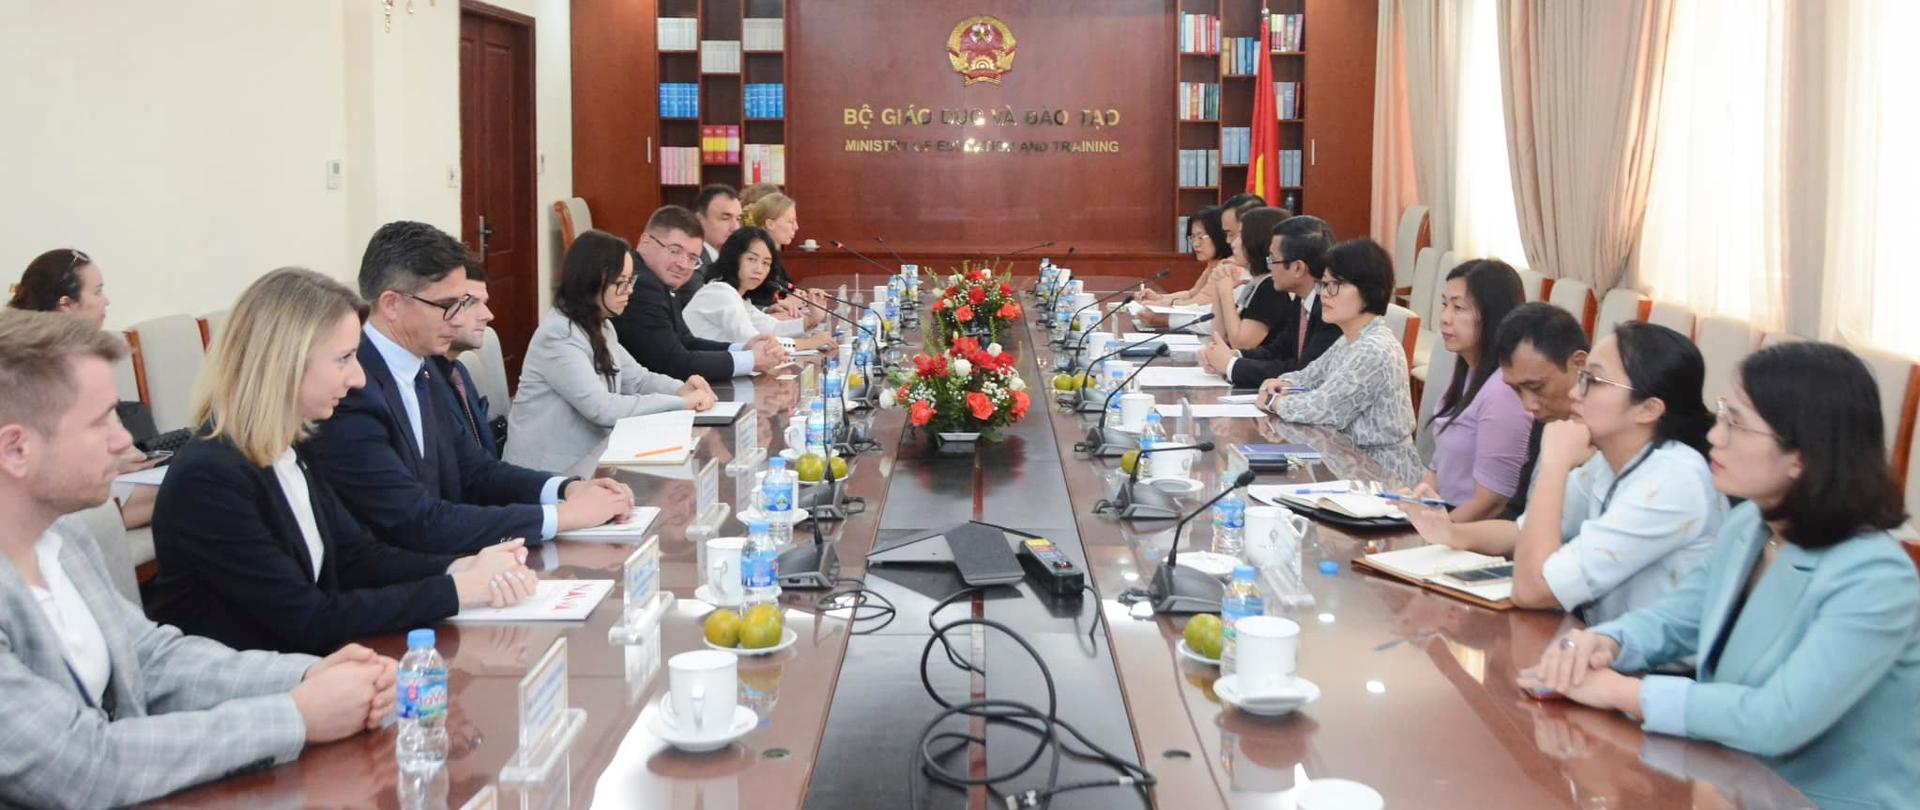 Wizyta Min. Rzymkowskiego w Wietnamie (fot. Ambasada RP w Wietnamie)